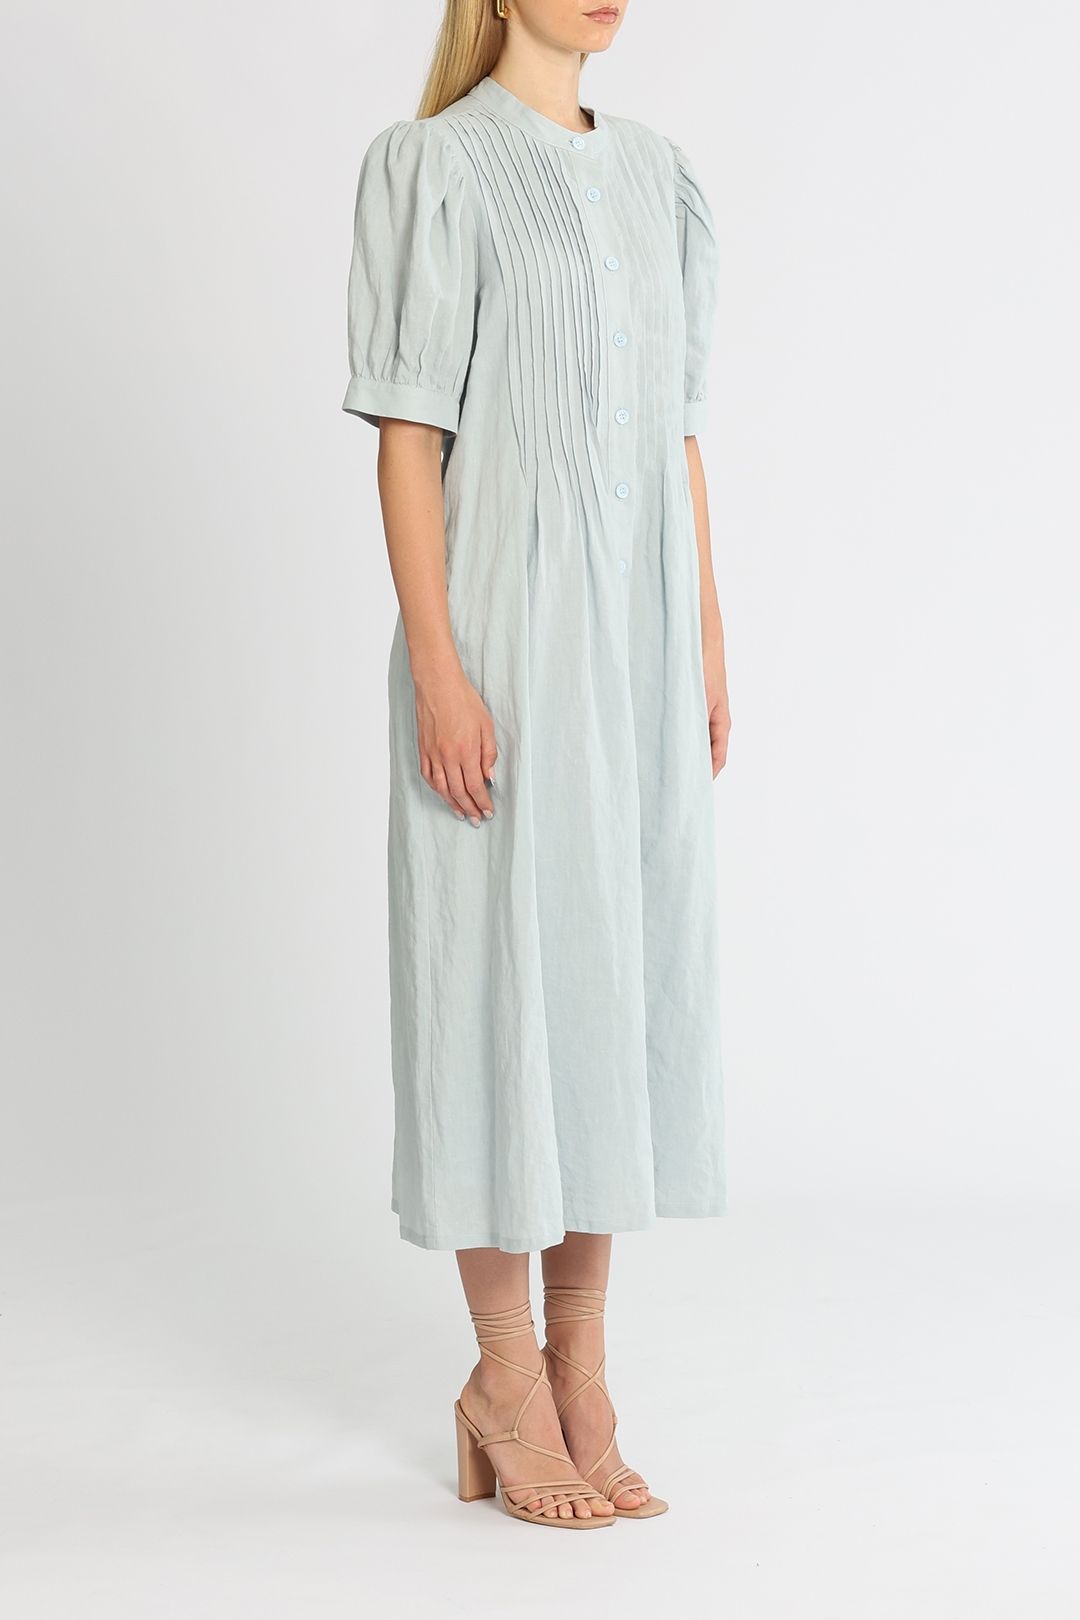 Jillian Boustred Pleat Dress Linen